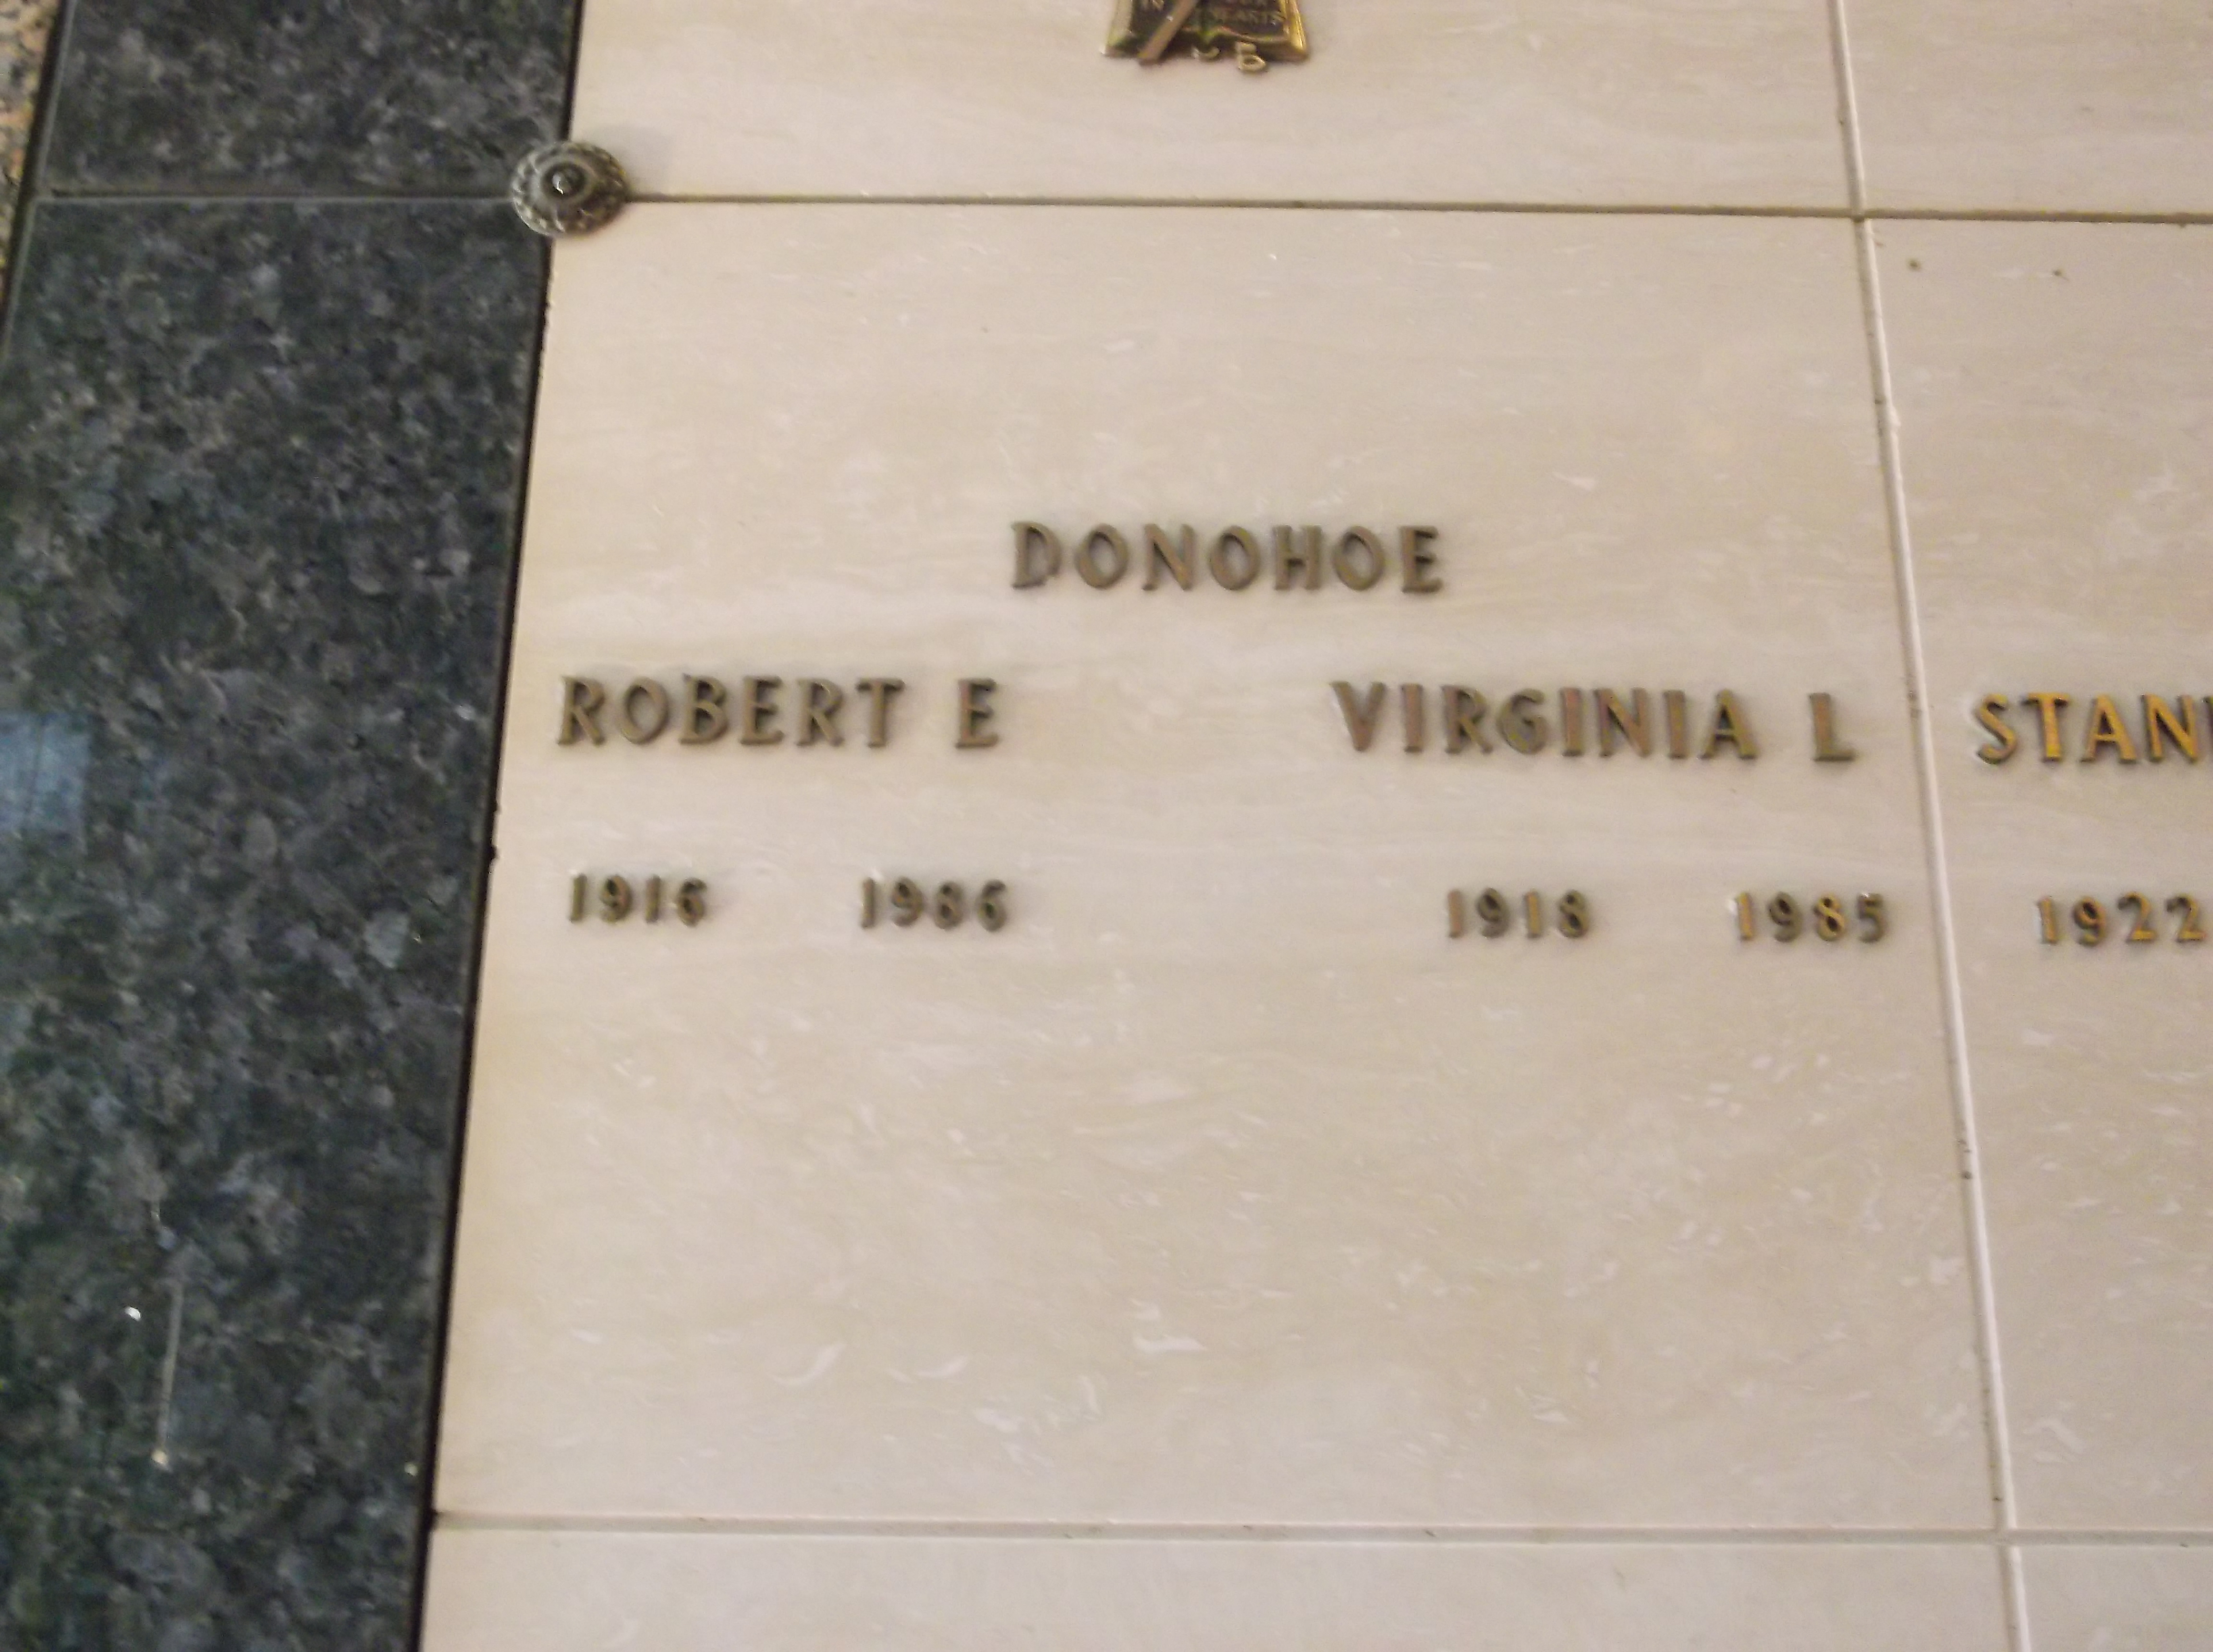 Virginia L Donohoe